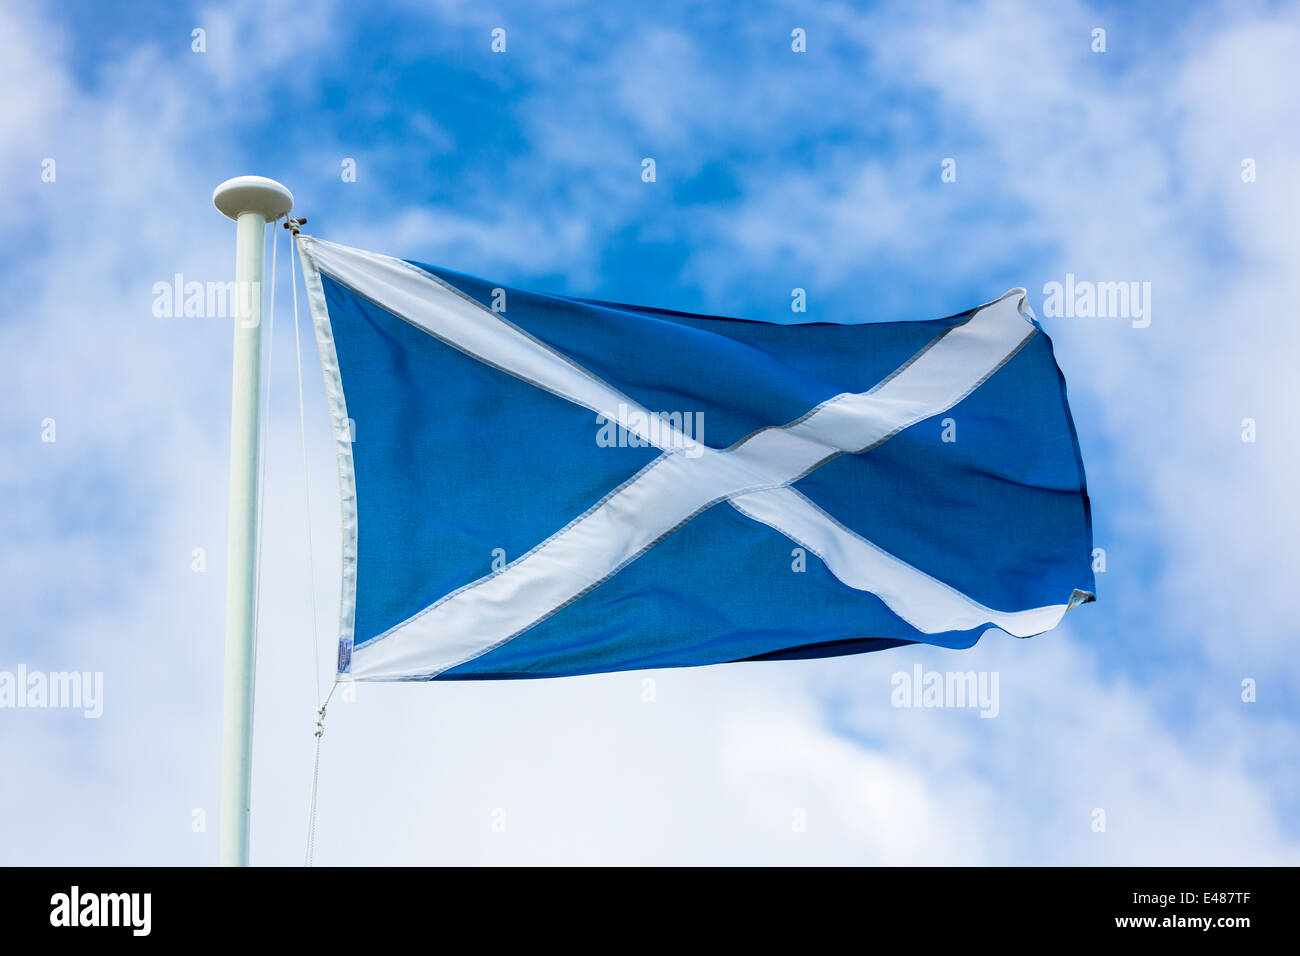 Saltire Flagge von St. Andrew fliegen vom Fahnenmast als schottisches Referendum Unabhängigkeit Kampagne fordert, dass Wähler ja für Schottland Stockfoto